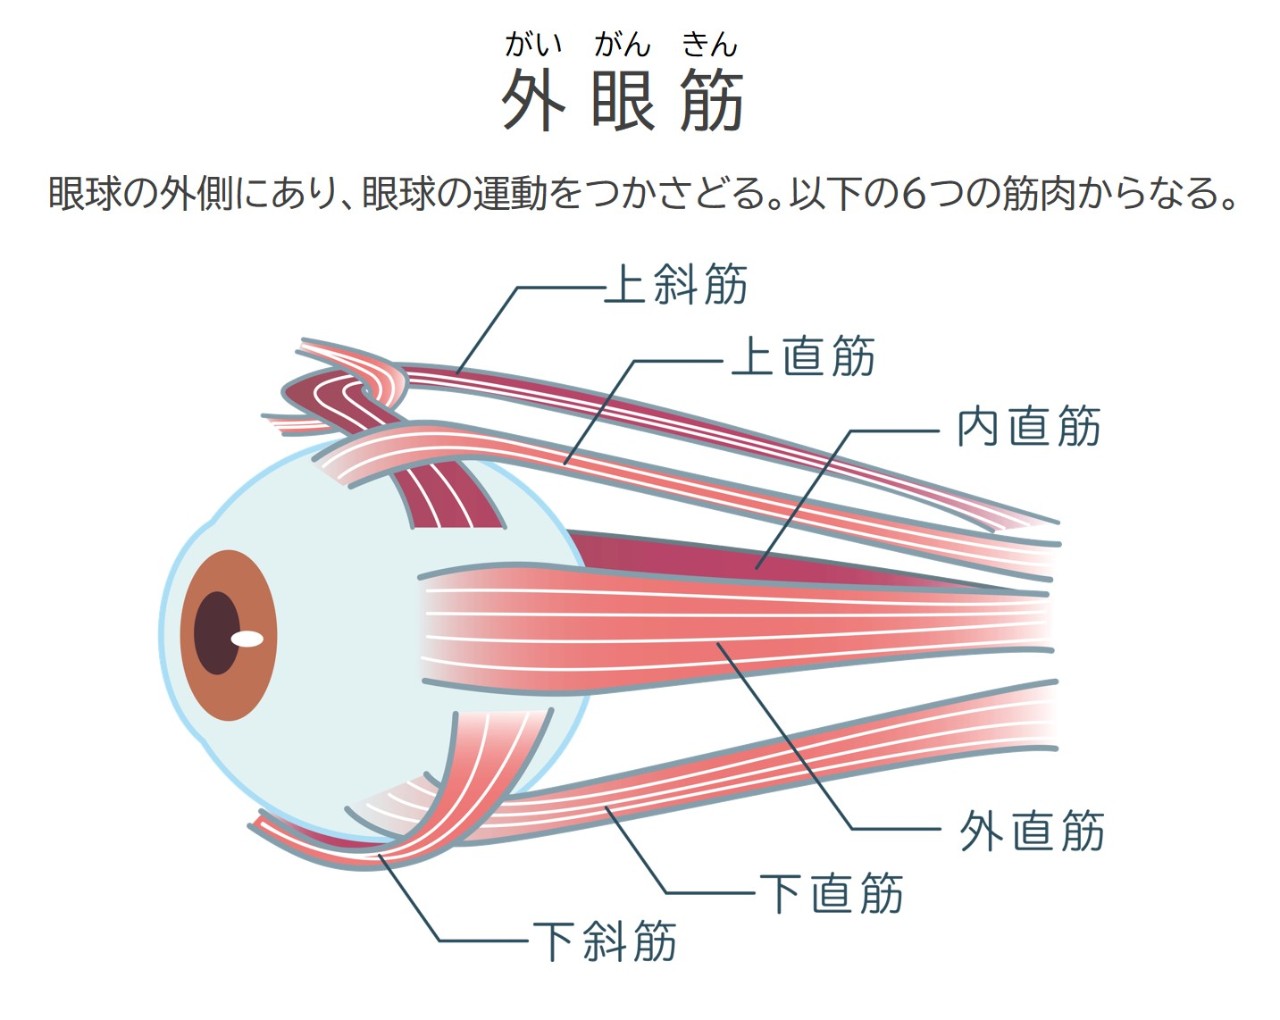 外眼筋とは、眼球の外側にあり眼球の運動をつかさどる。上斜筋、上直筋、内直筋、外直筋、下直筋、下斜筋の6つの筋肉からなる